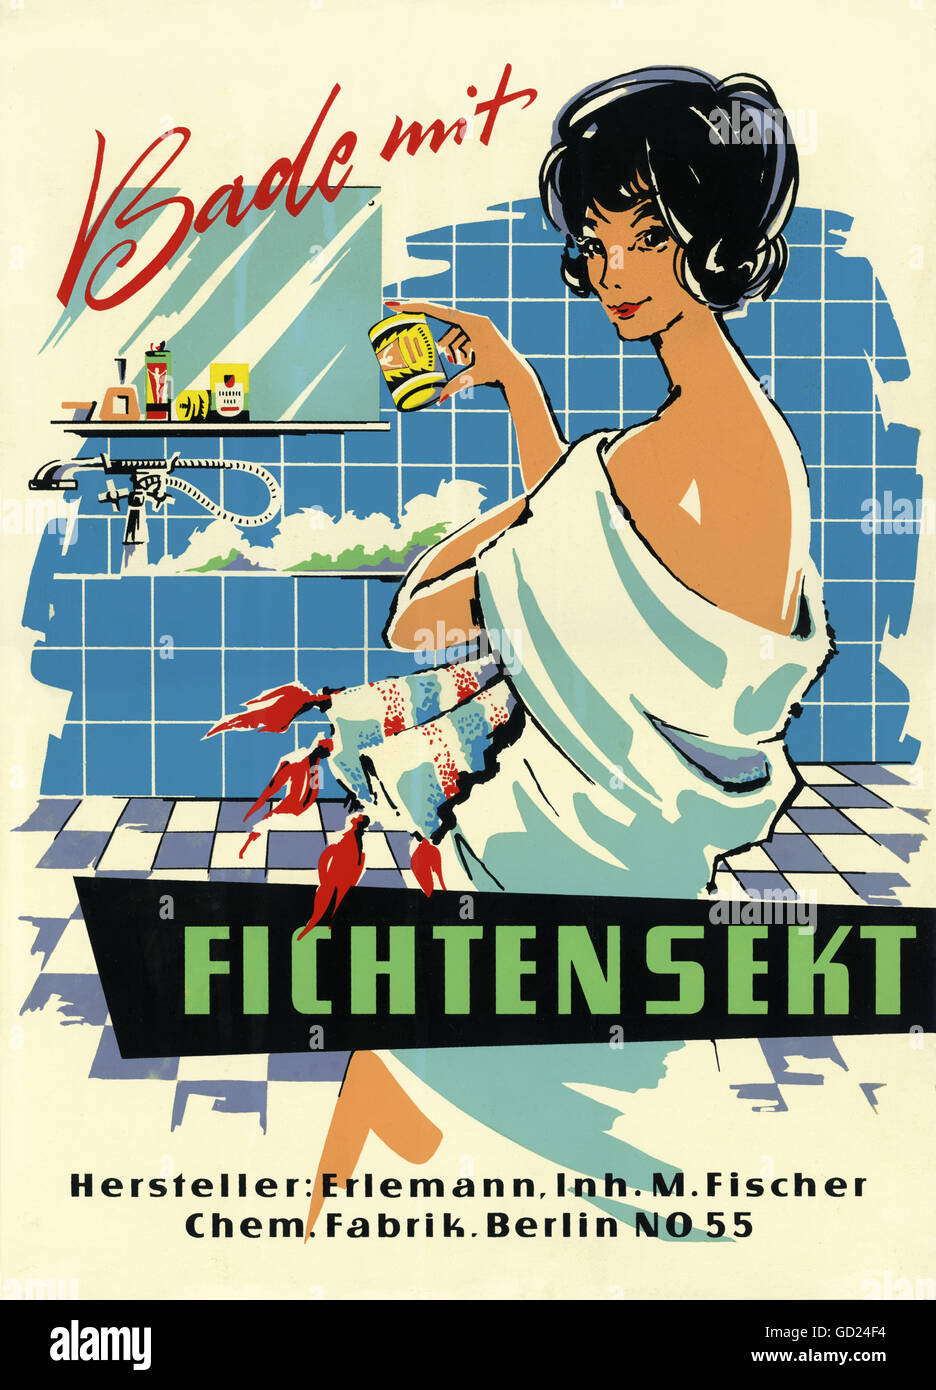 Pubblicità, cosmetici, pannello pubblicitario per sali da bagno, 'Bade mit Fichtensekt', marchio: Fichtensekt, prodotto da: Erlemann, impianto chimico, Berlino, Germania Est, circa 1955, diritti-aggiuntivi-non disponibili Foto Stock